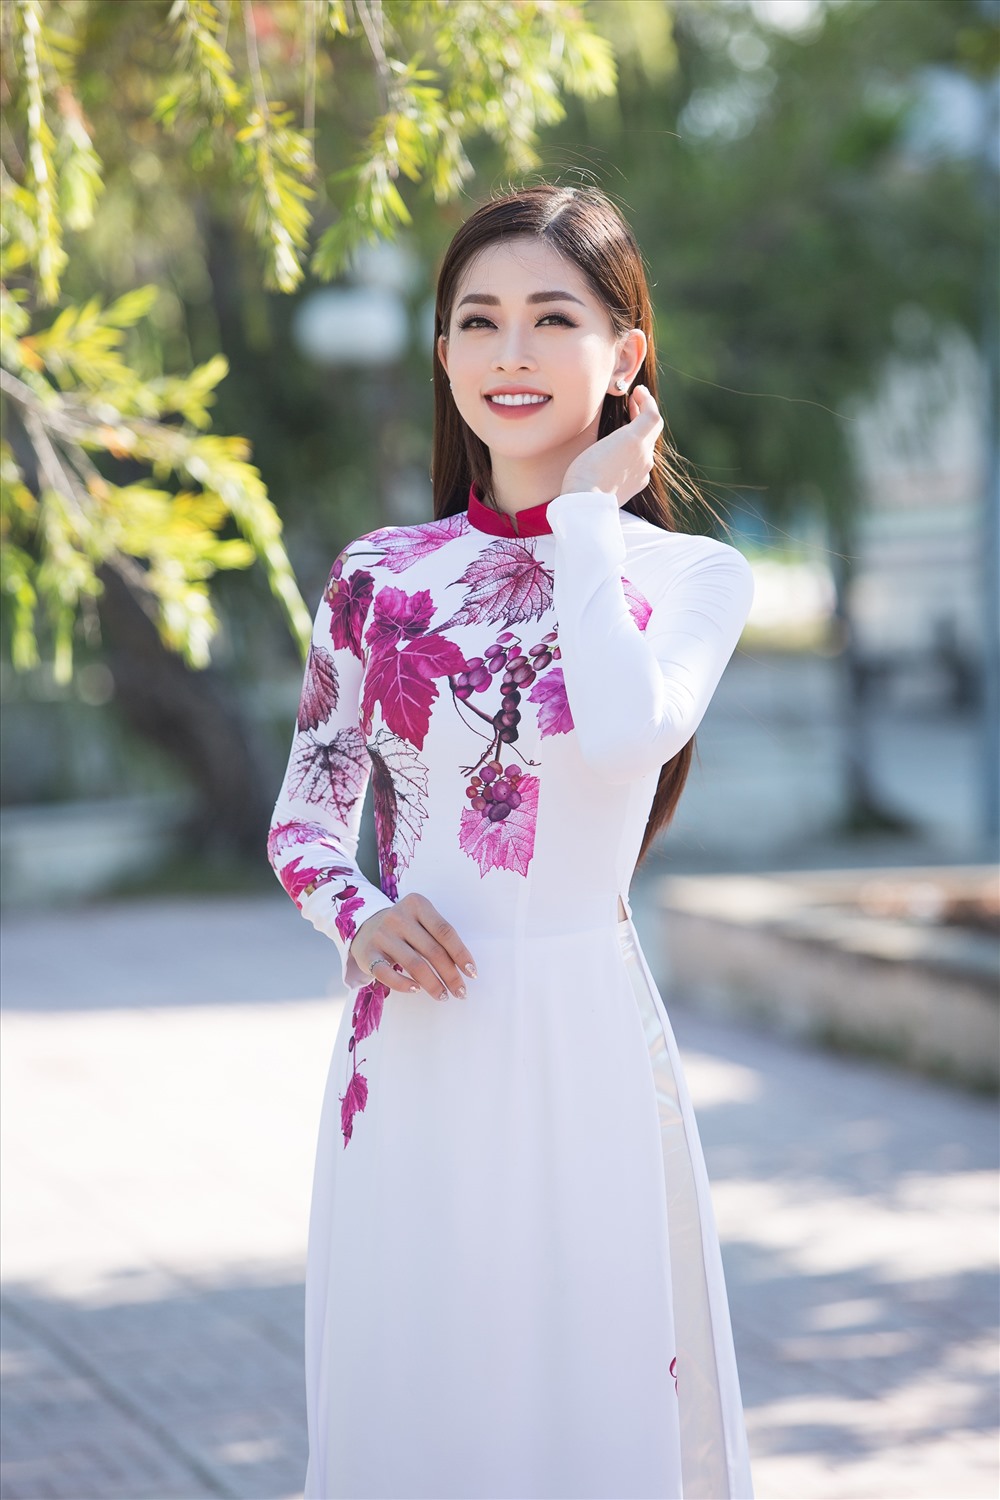 Tuy thường xuyên gặp gỡ trong công việc nhưng đây là lần đầu tiên top 3 Hoa hậu Việt Nam cùng nhau trở thành đại sứ của một lễ hội và được đích thân Tổng đạo diễn Hoàng Nhật Nam lên ý tưởng về trang phục, hình ảnh xuất hiện trong Lễ hội Nho vang lần này.